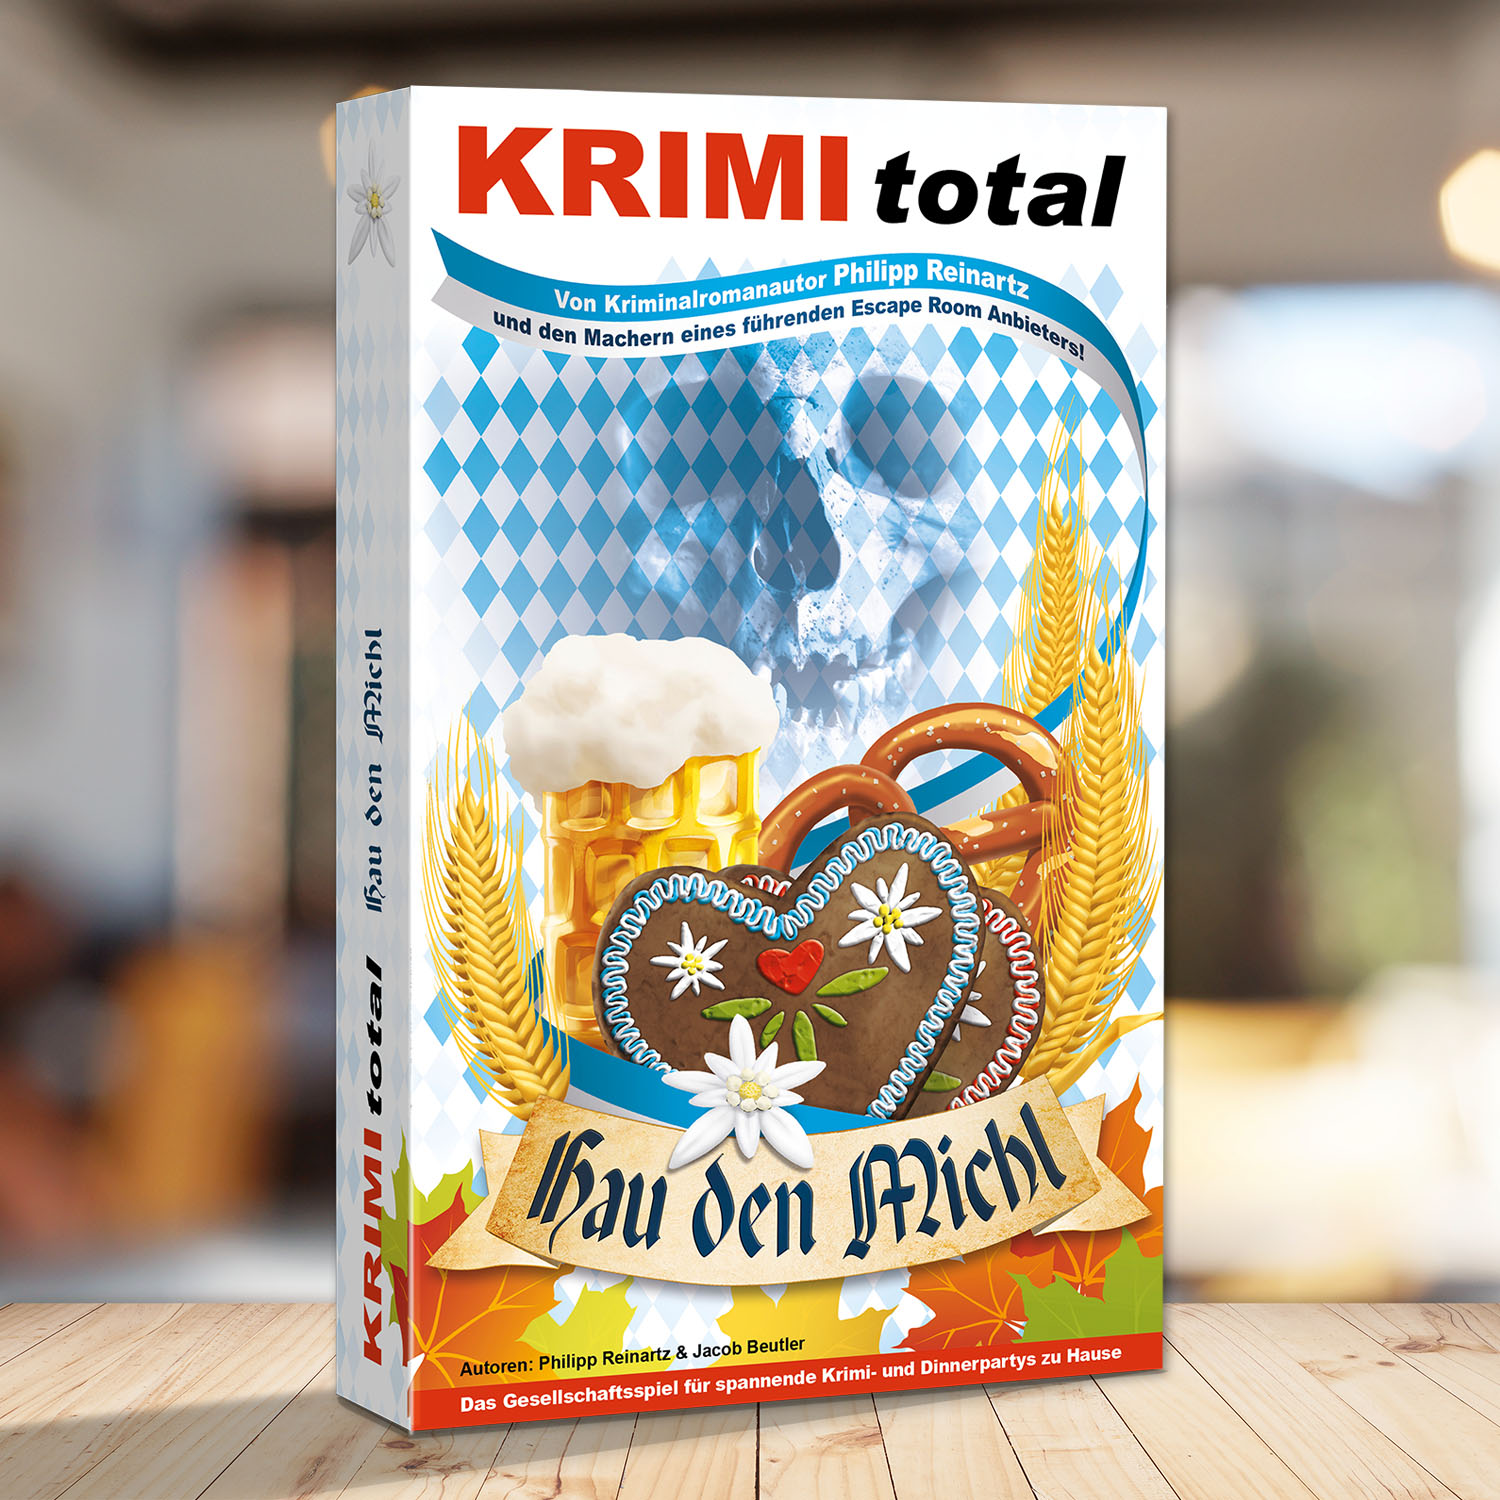 Abbildung eines Spielkartons des Krimidinner Spiels "KRIMI total - Hau den Michl"